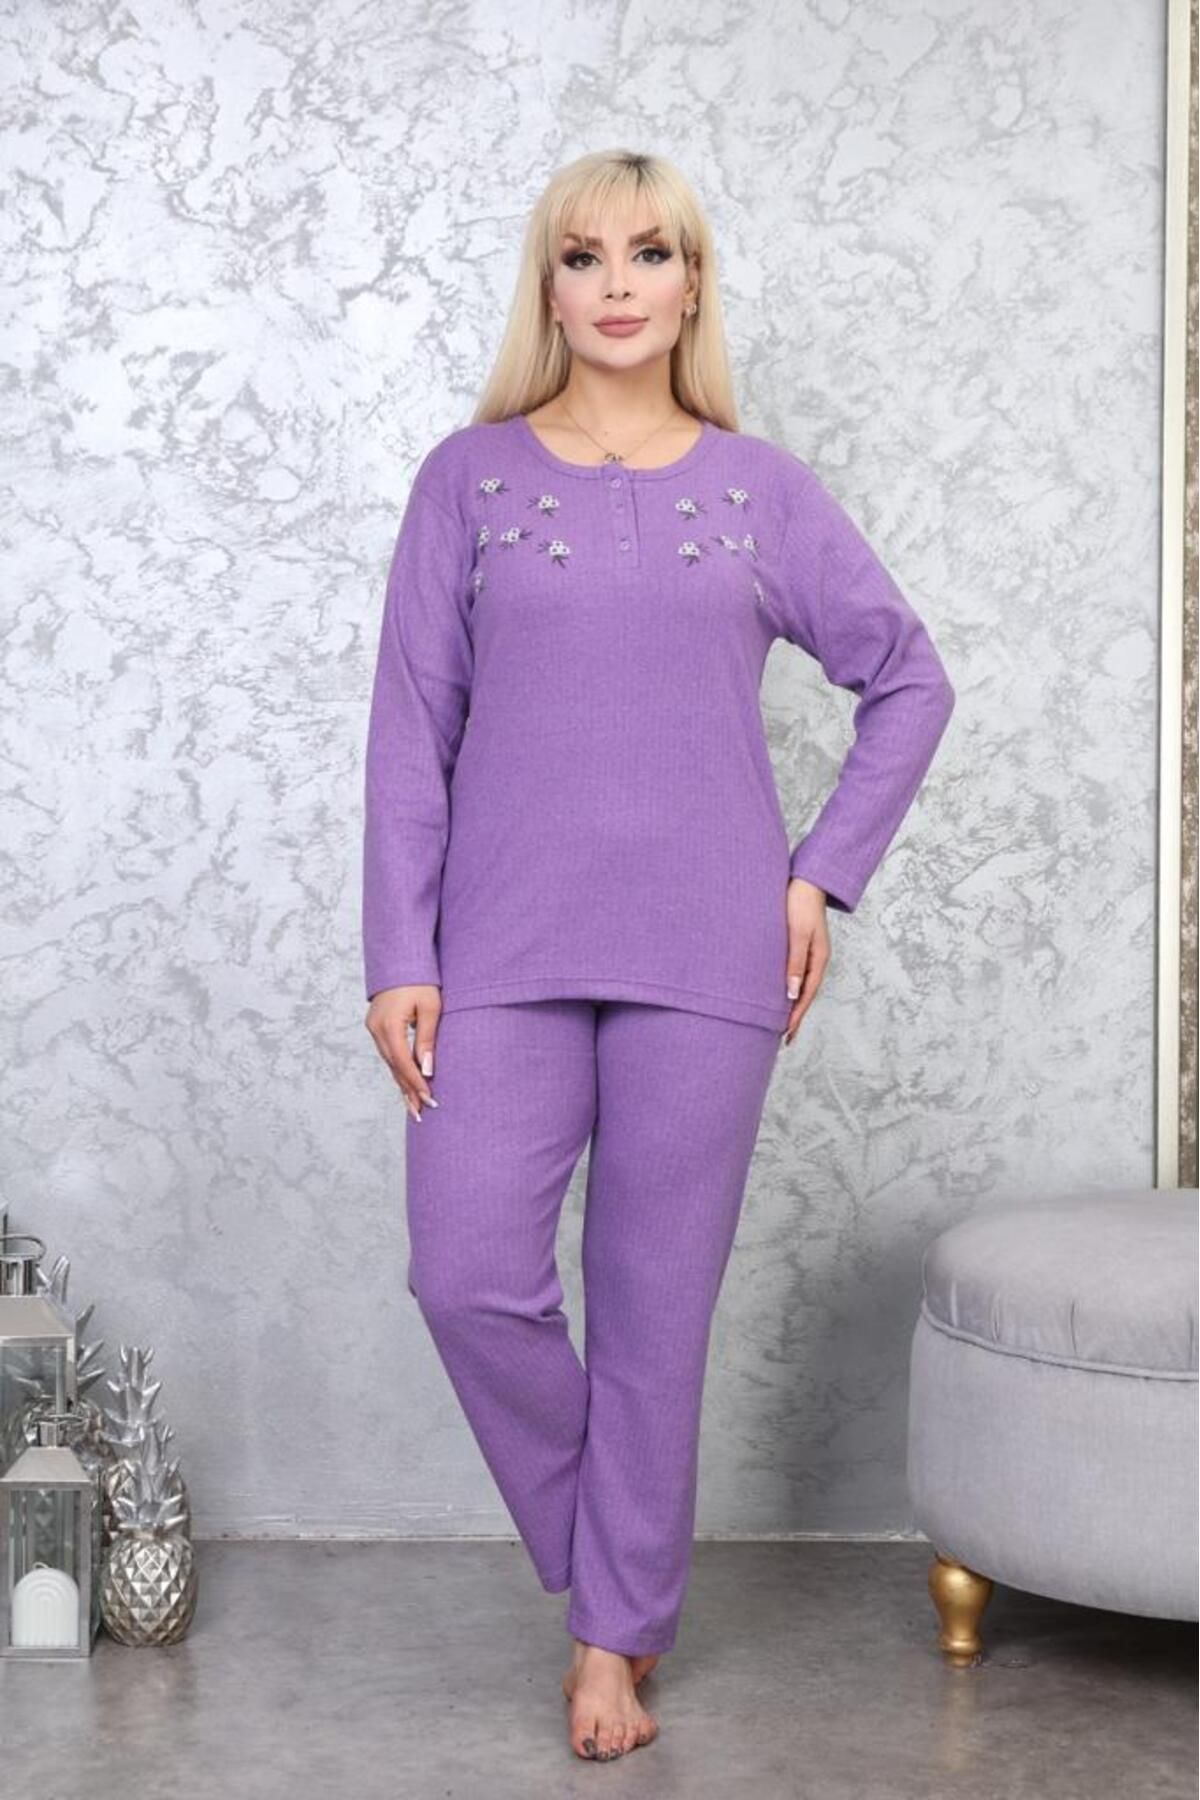 Meba Kadın Kışlık Uzun Kol Çiçek Desenli Büyük Beden Mor Lila Pijama Takımı